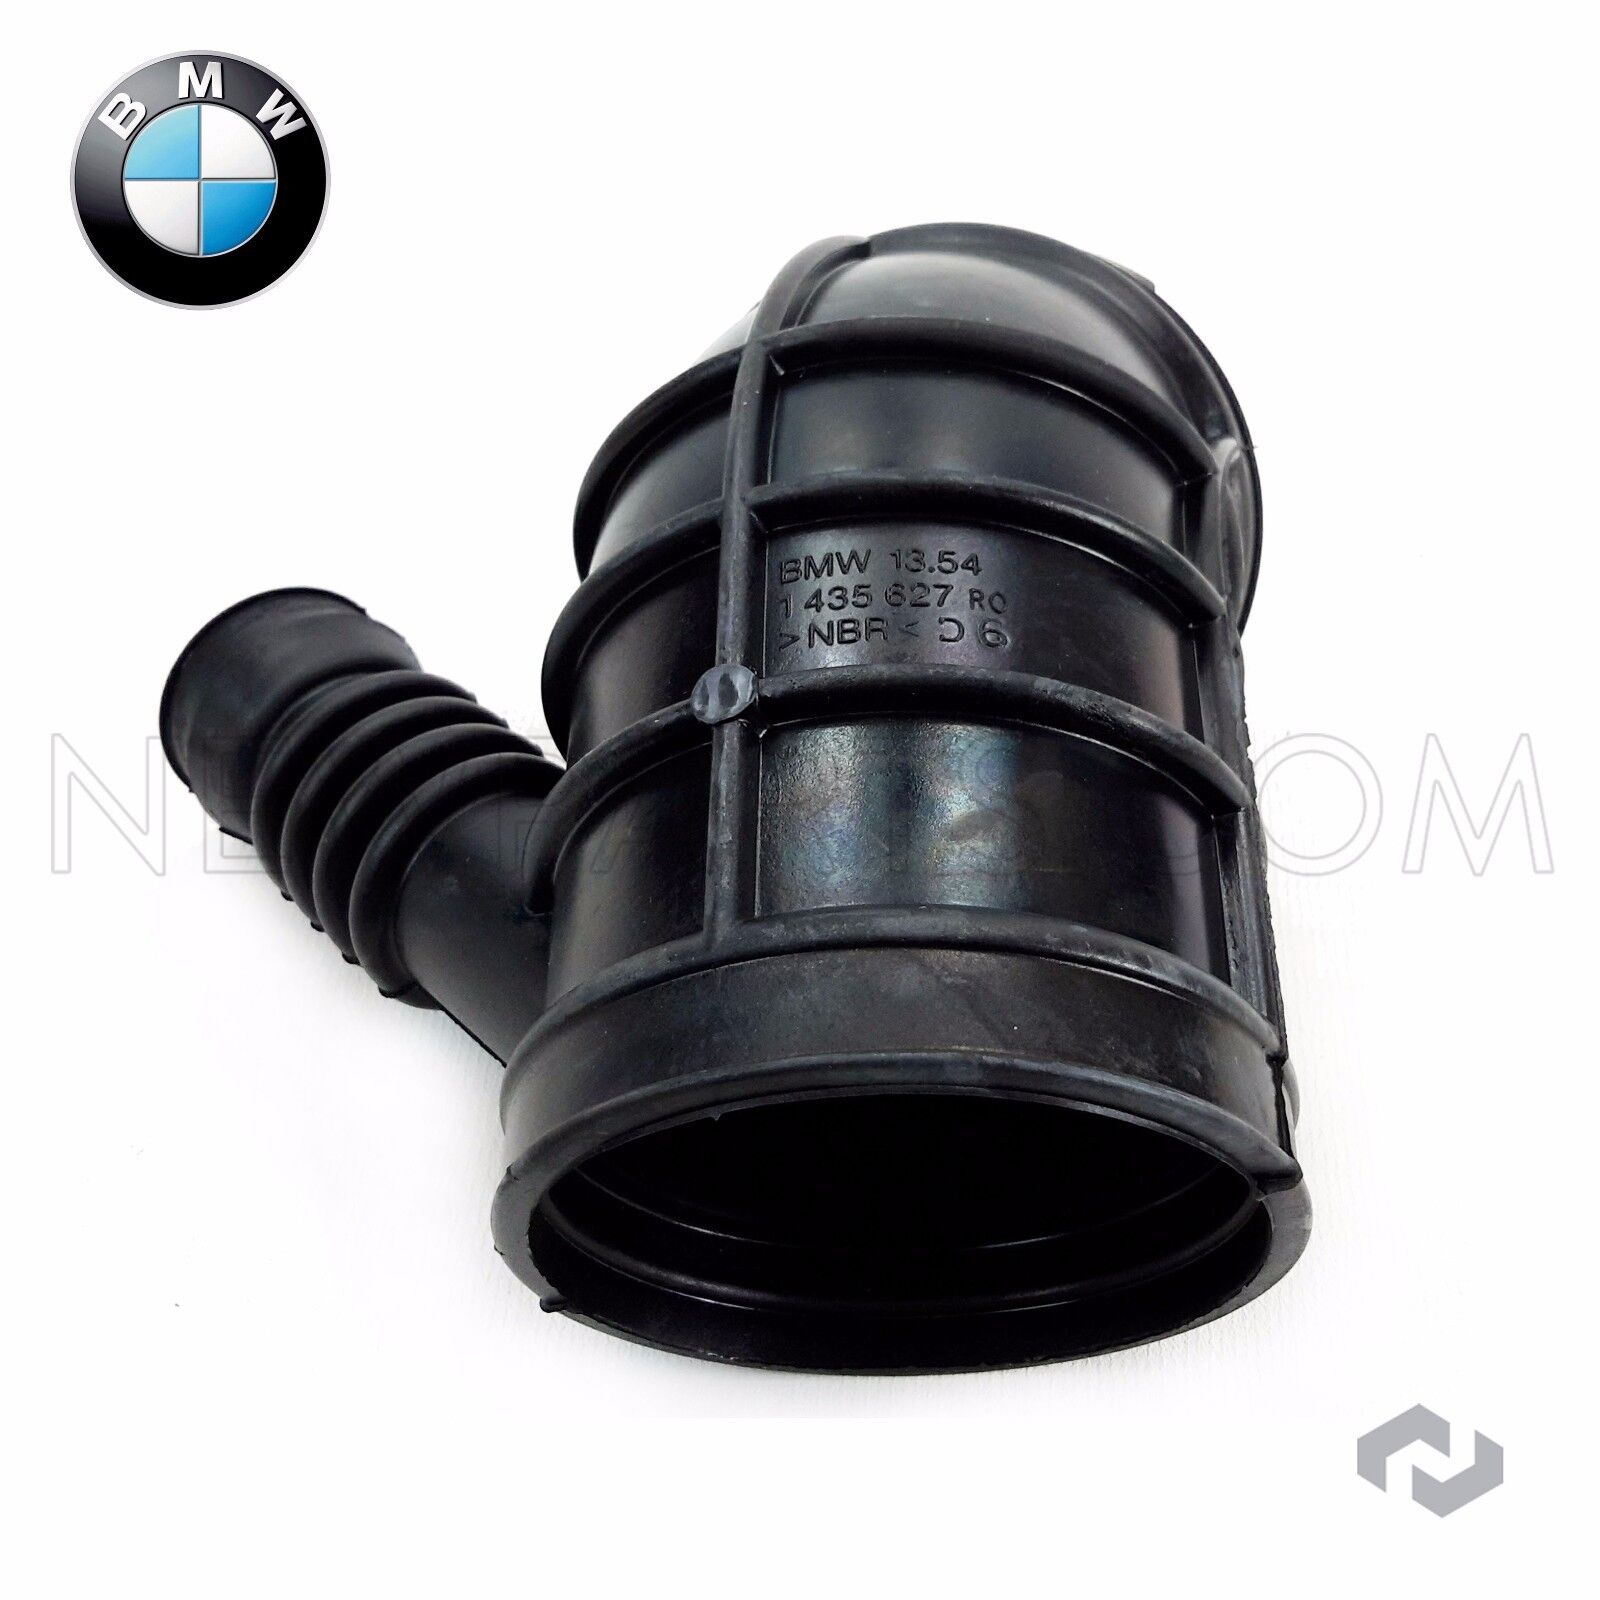 NEW For BMW Genuine Air Intake Boot E39 E46 Z3 323i 325i 325Xi 328i 525i 528i